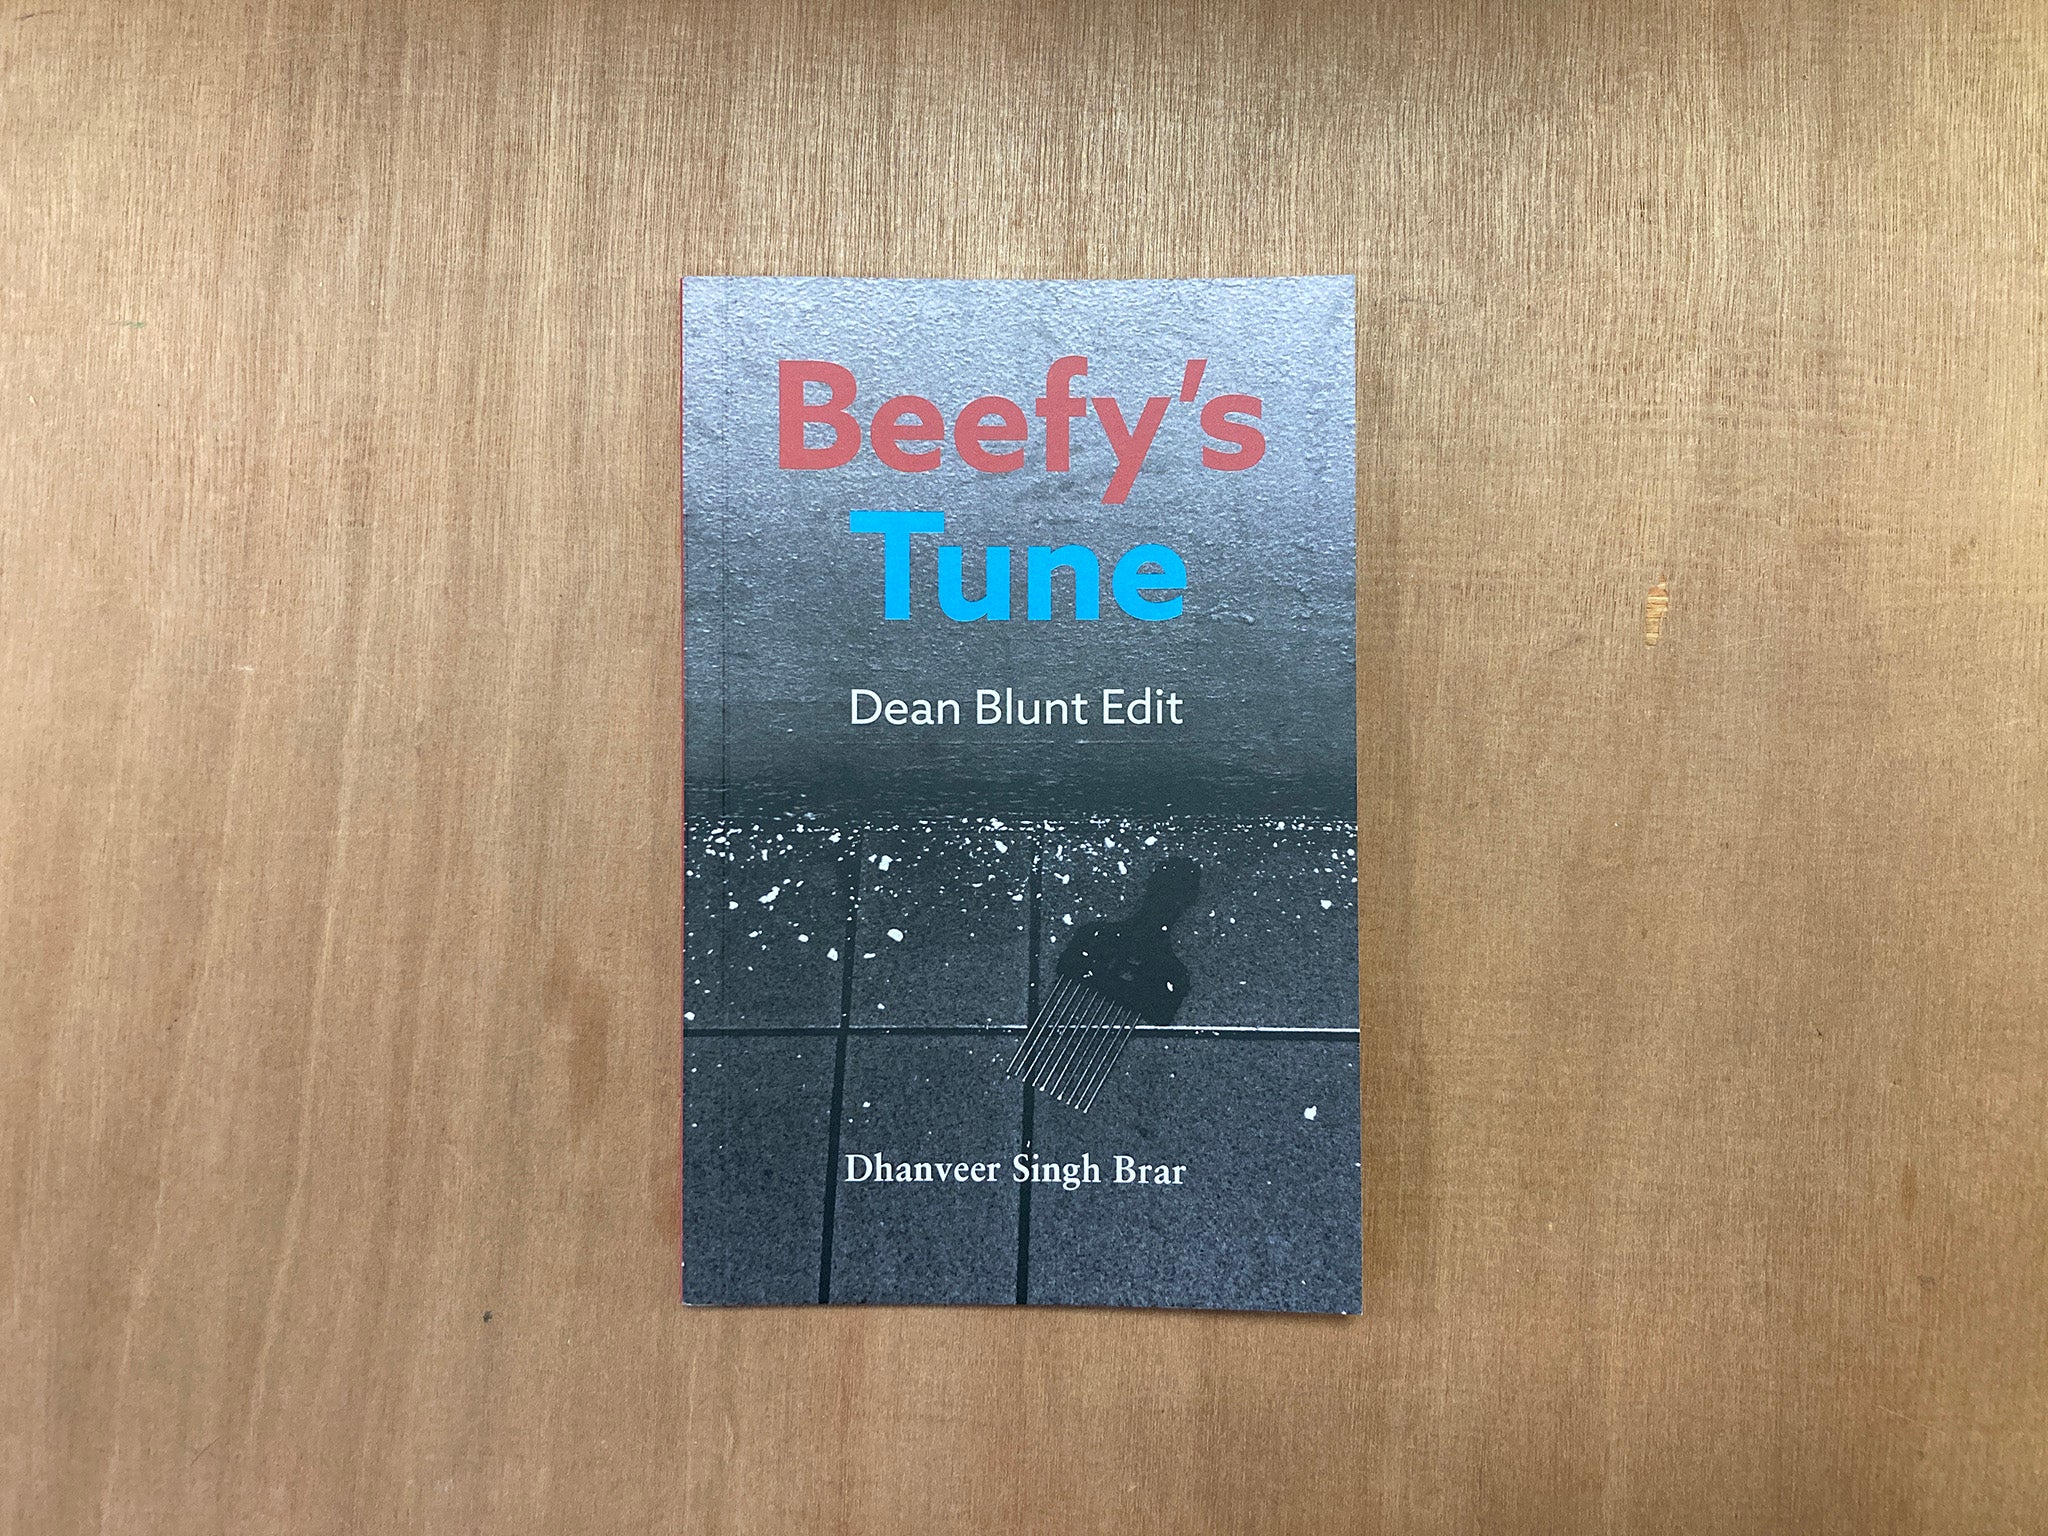 BEEFY'S TUNE (DEAN BLUNT EDIT) by Dhanveer Singh Brar